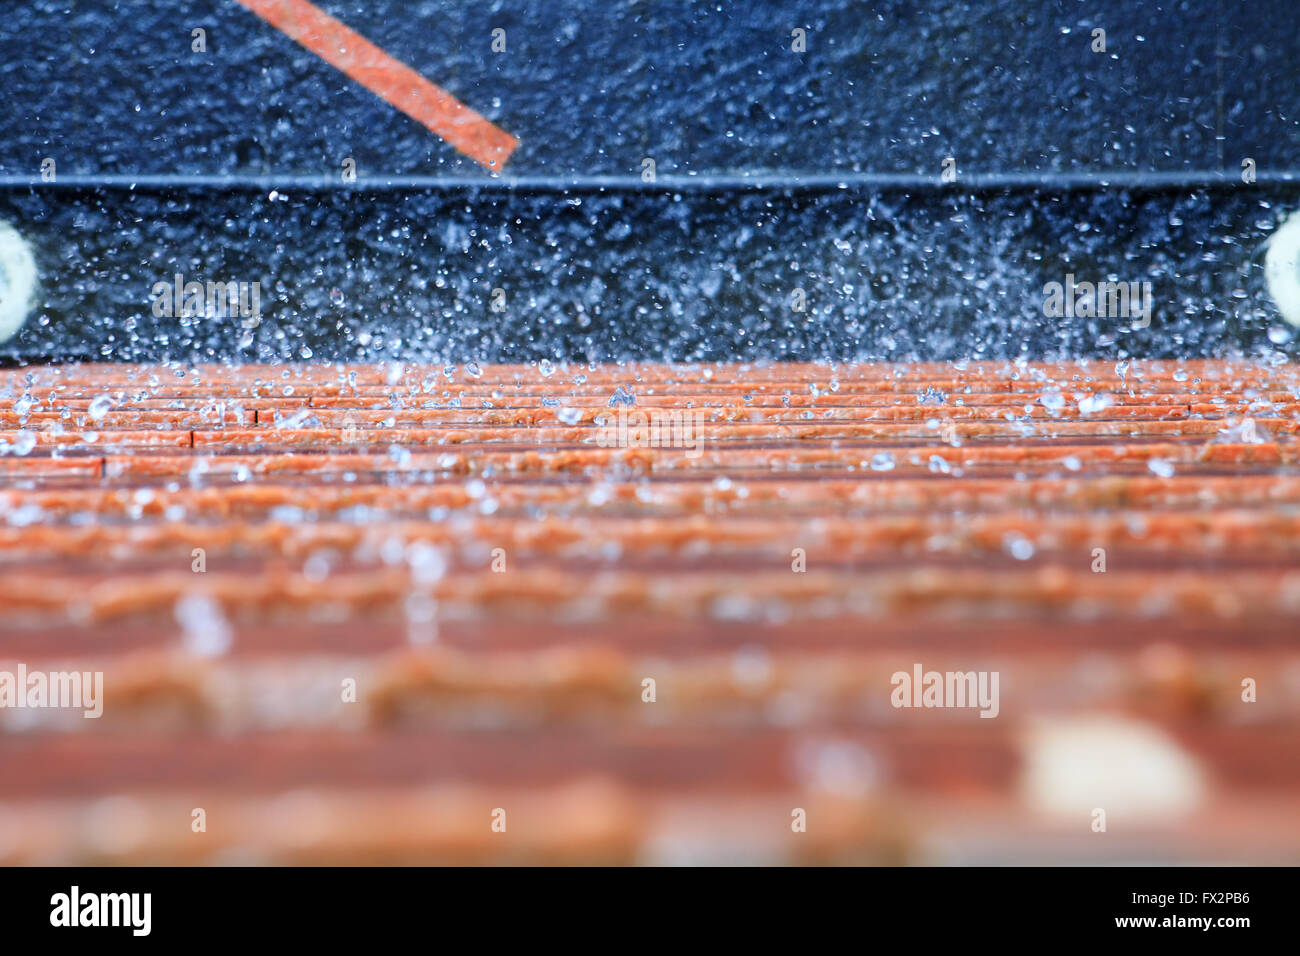 Résumé fond de l'eau éclaboussant sur bleu orange wall Banque D'Images